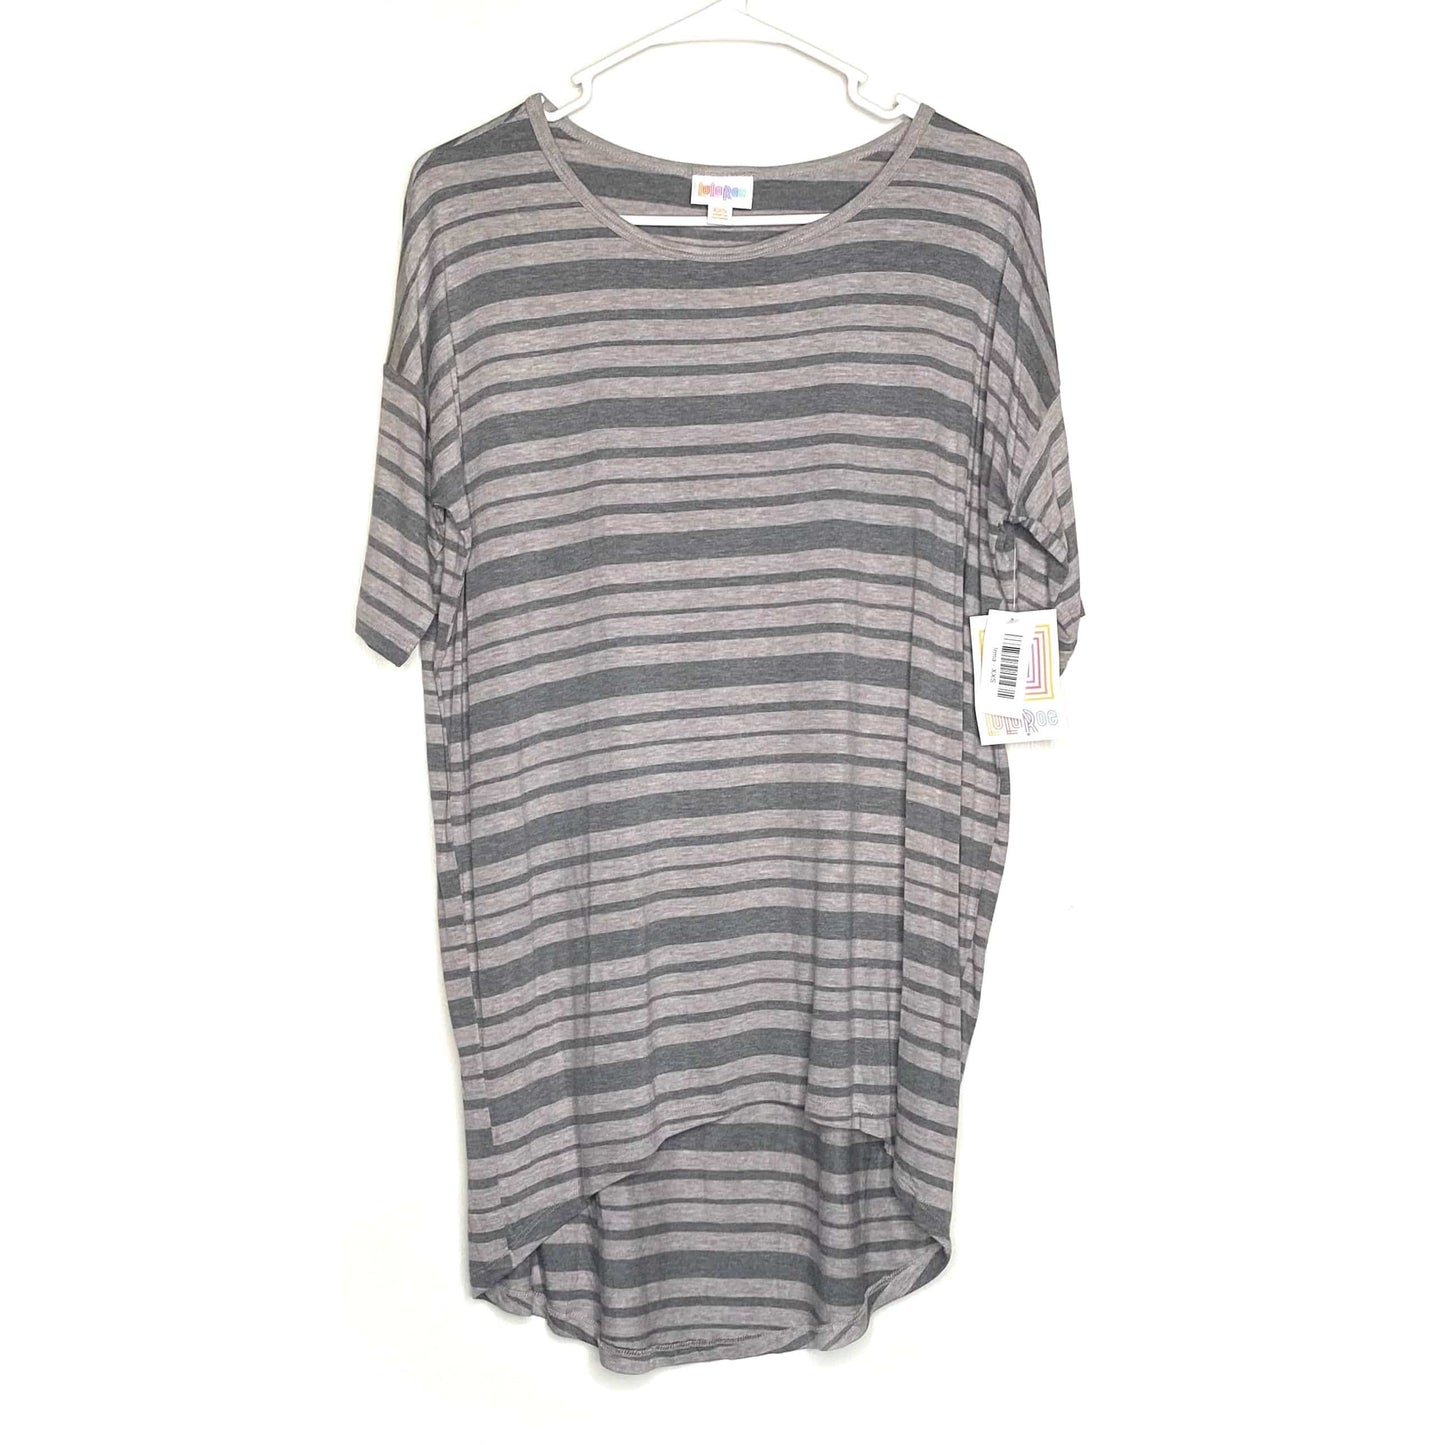 LuLaRoe Womens Size XXS Irma Gray Striped T-Shirt S/s NWT